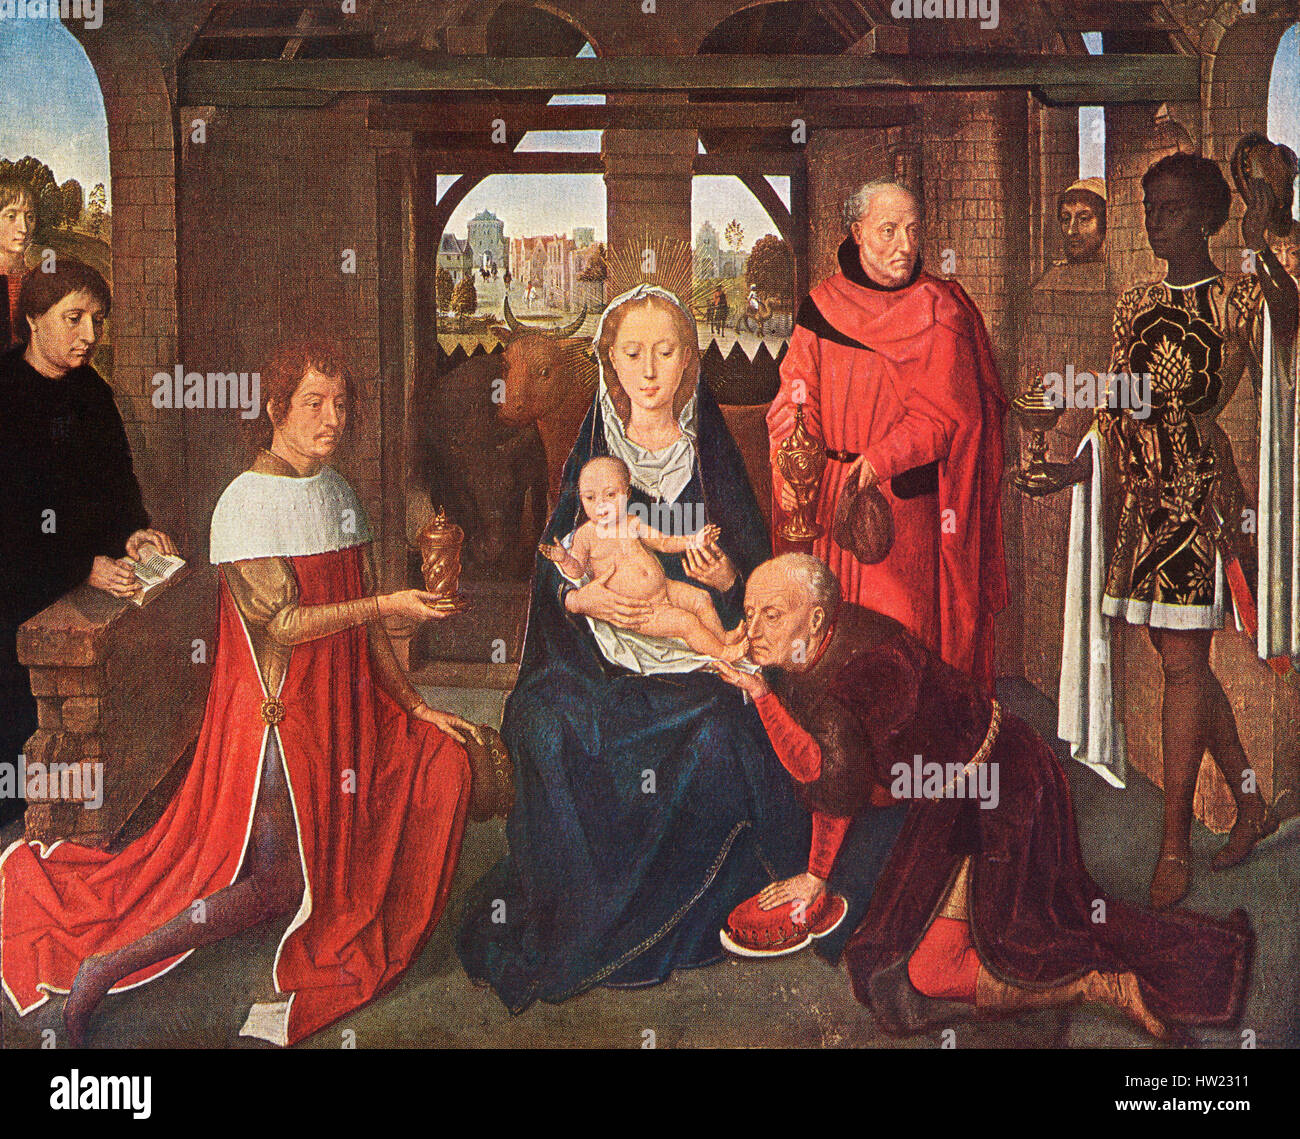 Il pannello centrale del trittico di Jan Floreins da Hans Memling, c. 1430/1440 - 1494. Adorazione dei Magi. Foto Stock